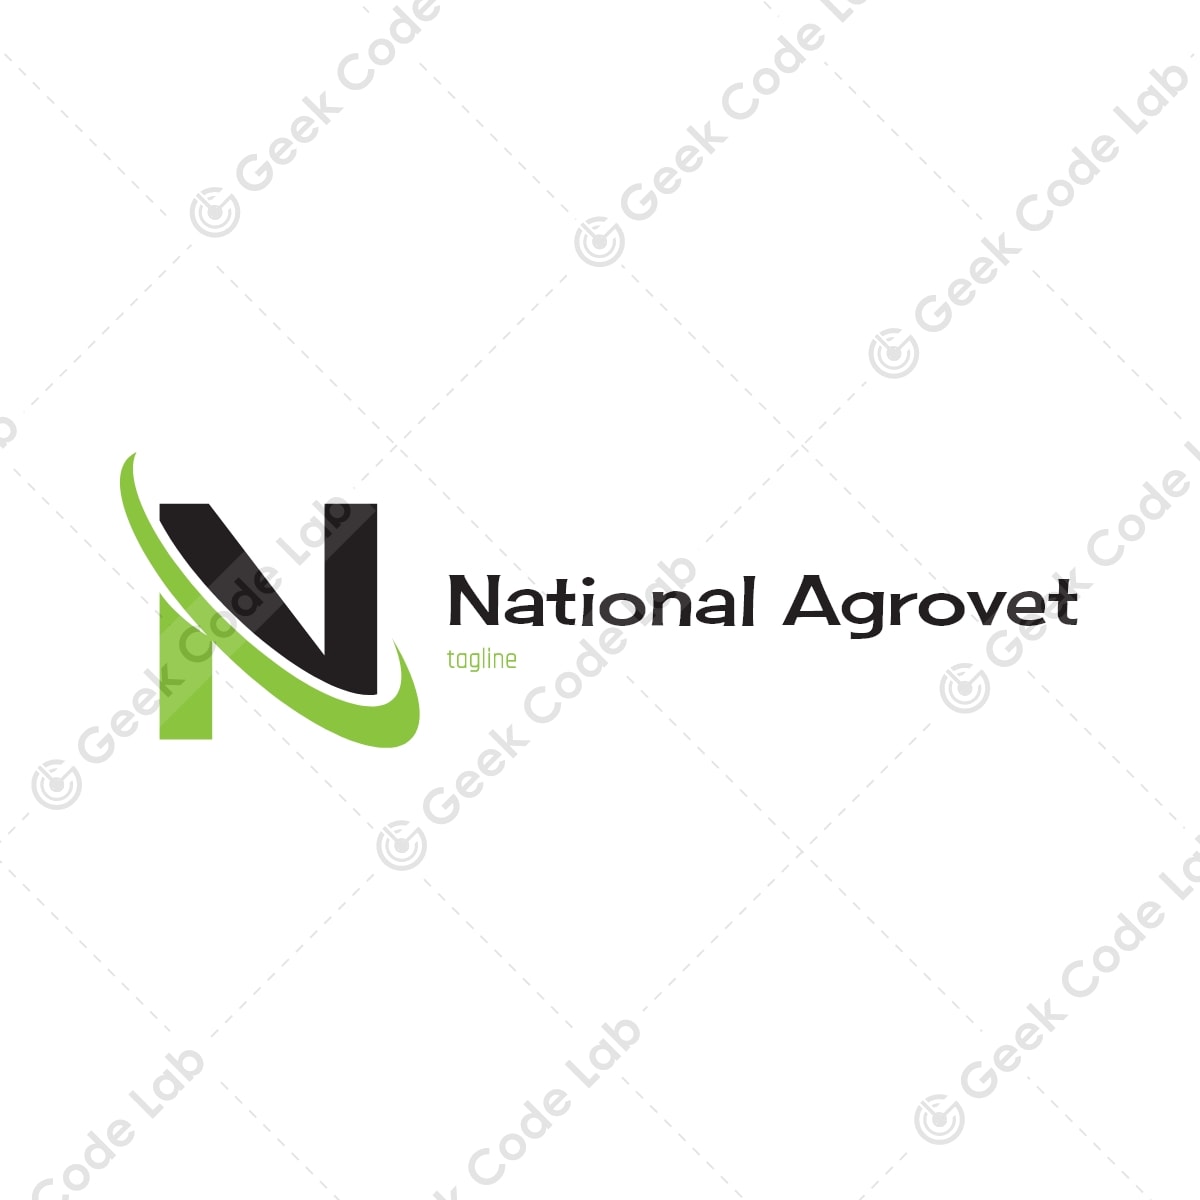 National Agrovet